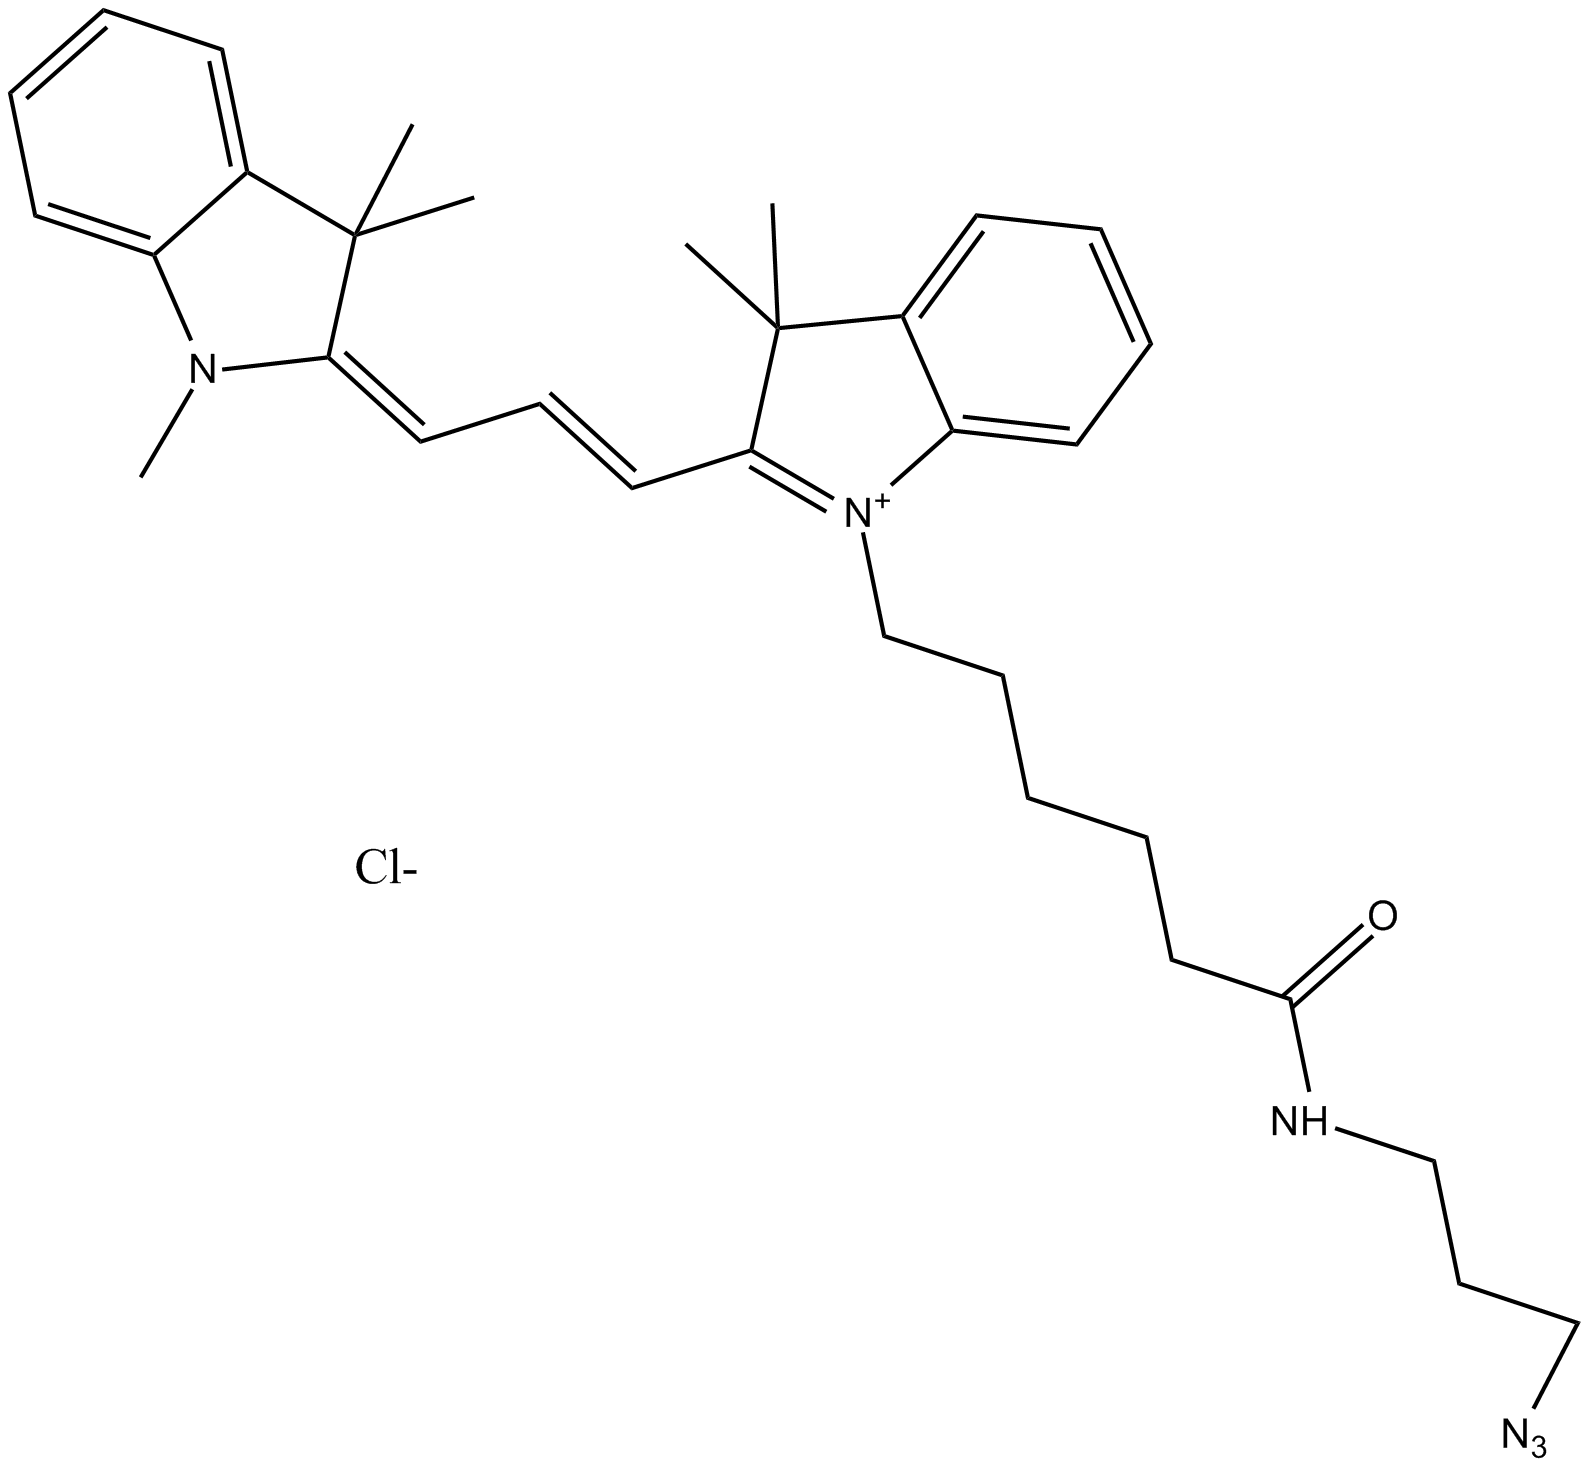 Cy3 azide (non-sulfonated)